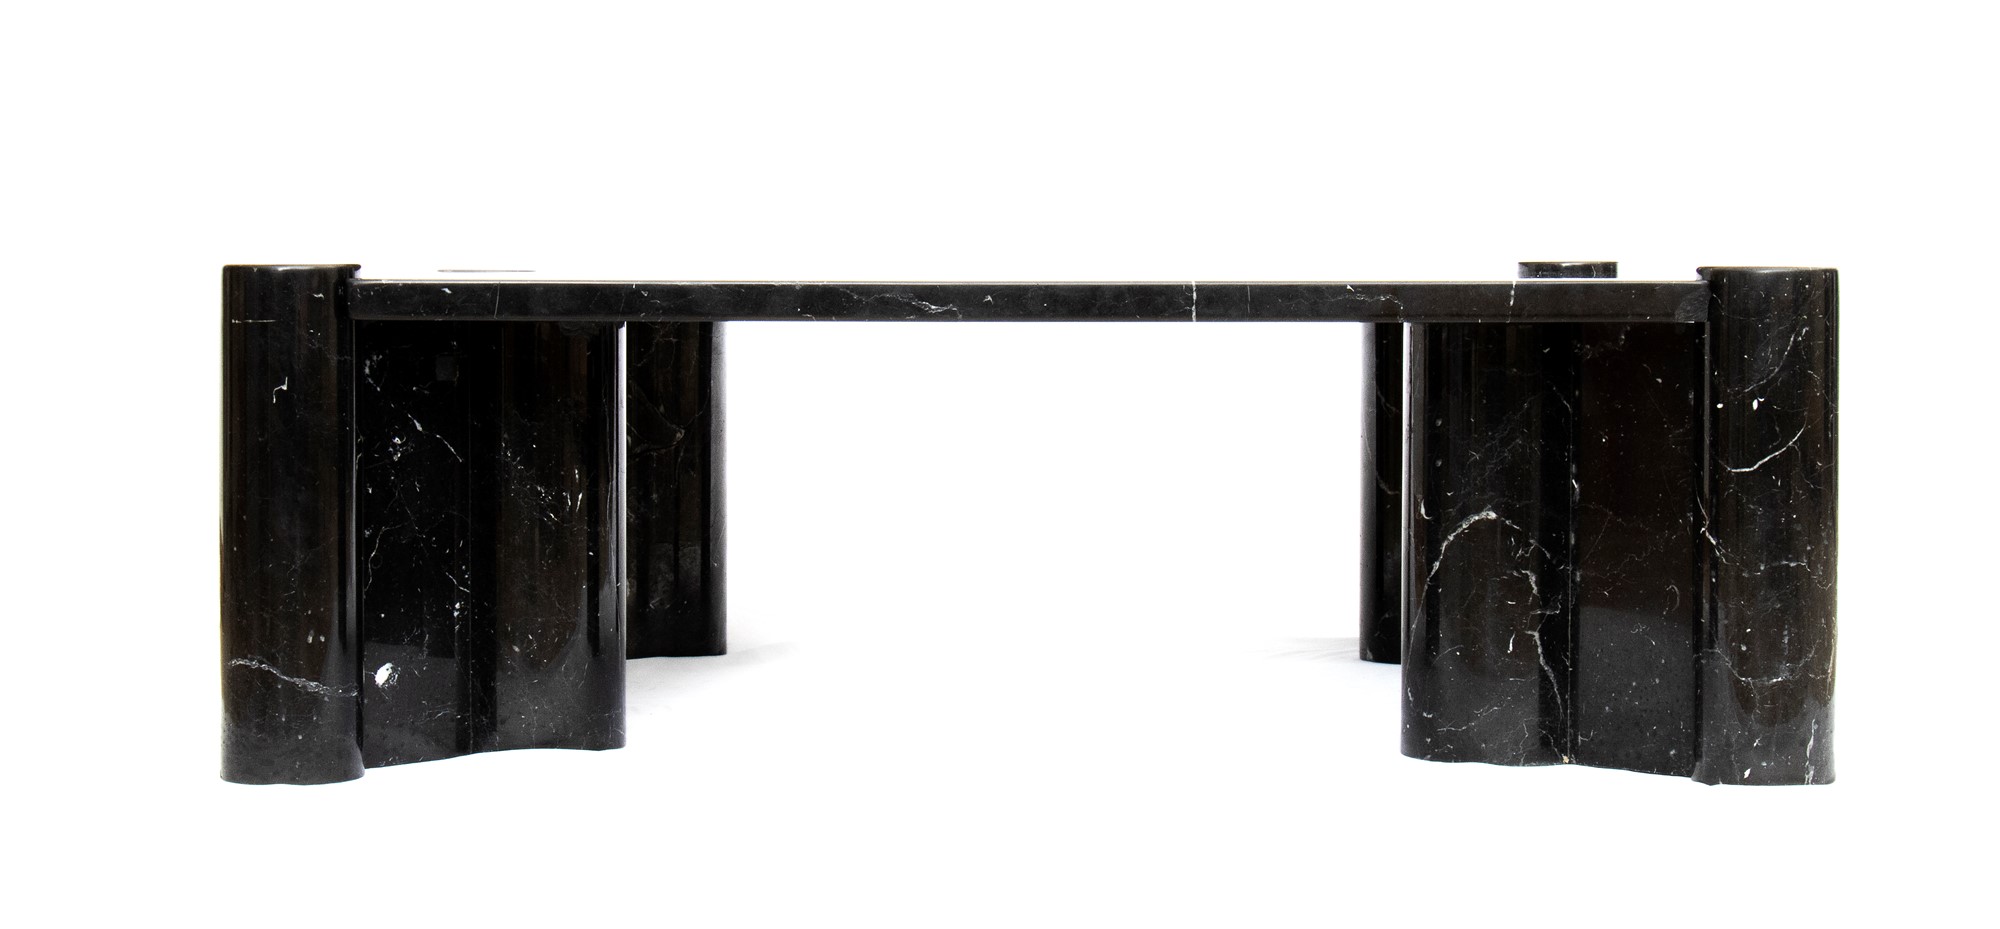 Gae Aulenti Palazzolo dello Stella 1927-Milano 2012 Living room table in black marble marquinia mod - Image 10 of 23